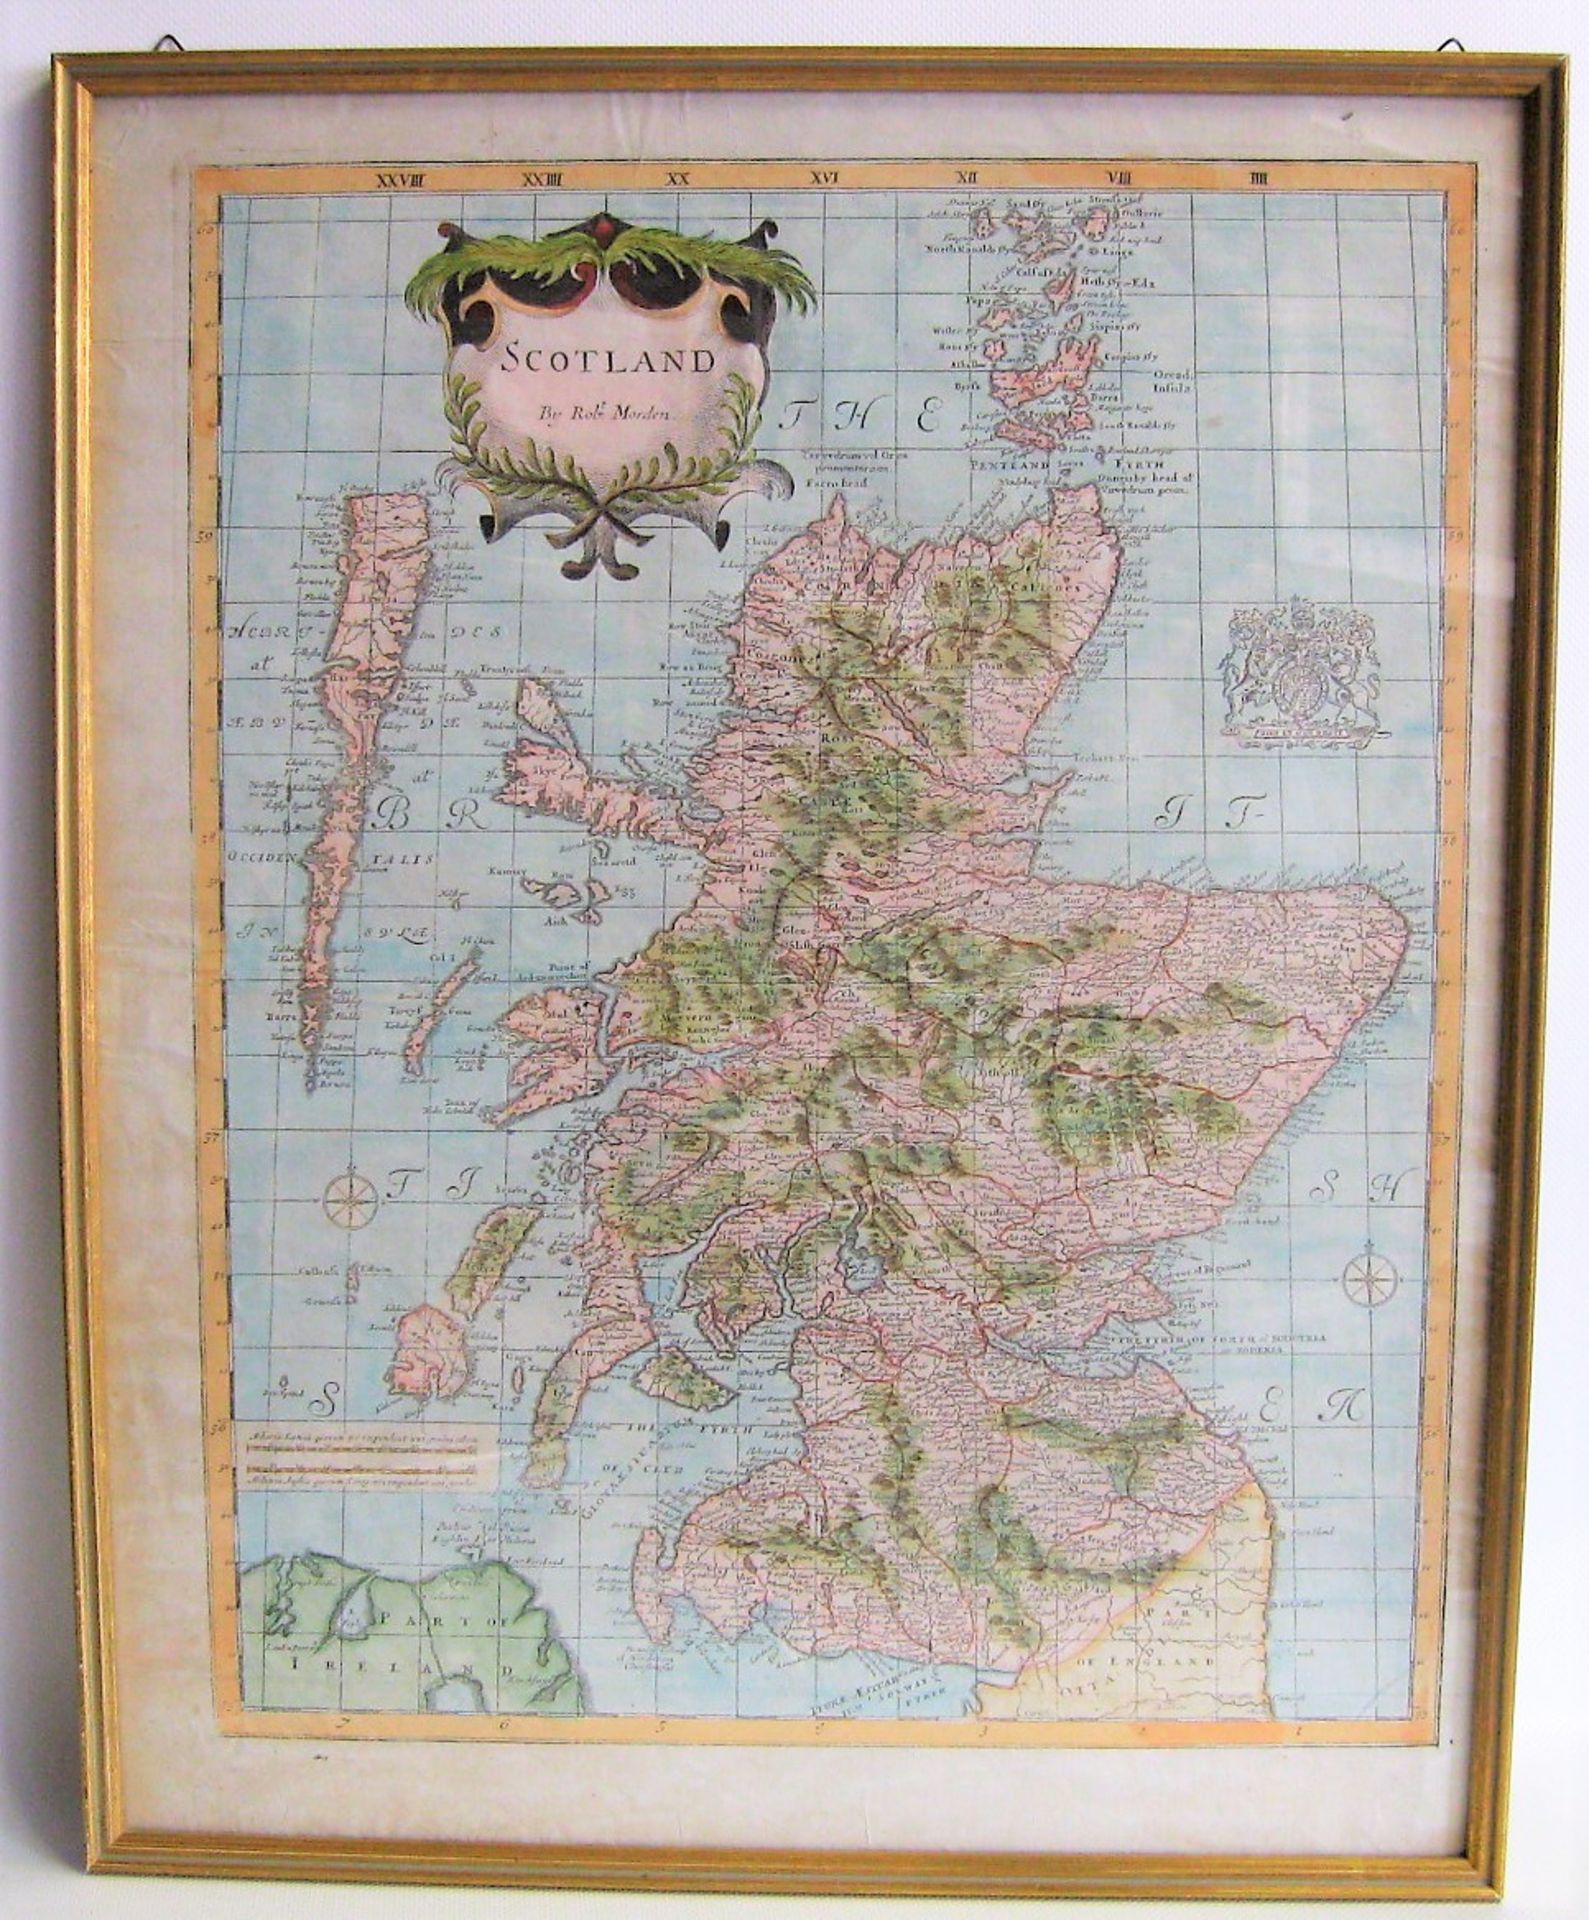 Morden, Robert, 1650 - 1703, Englischer Verleger und Kupferstecher,Kupferstichlandkarte, "Scotland",